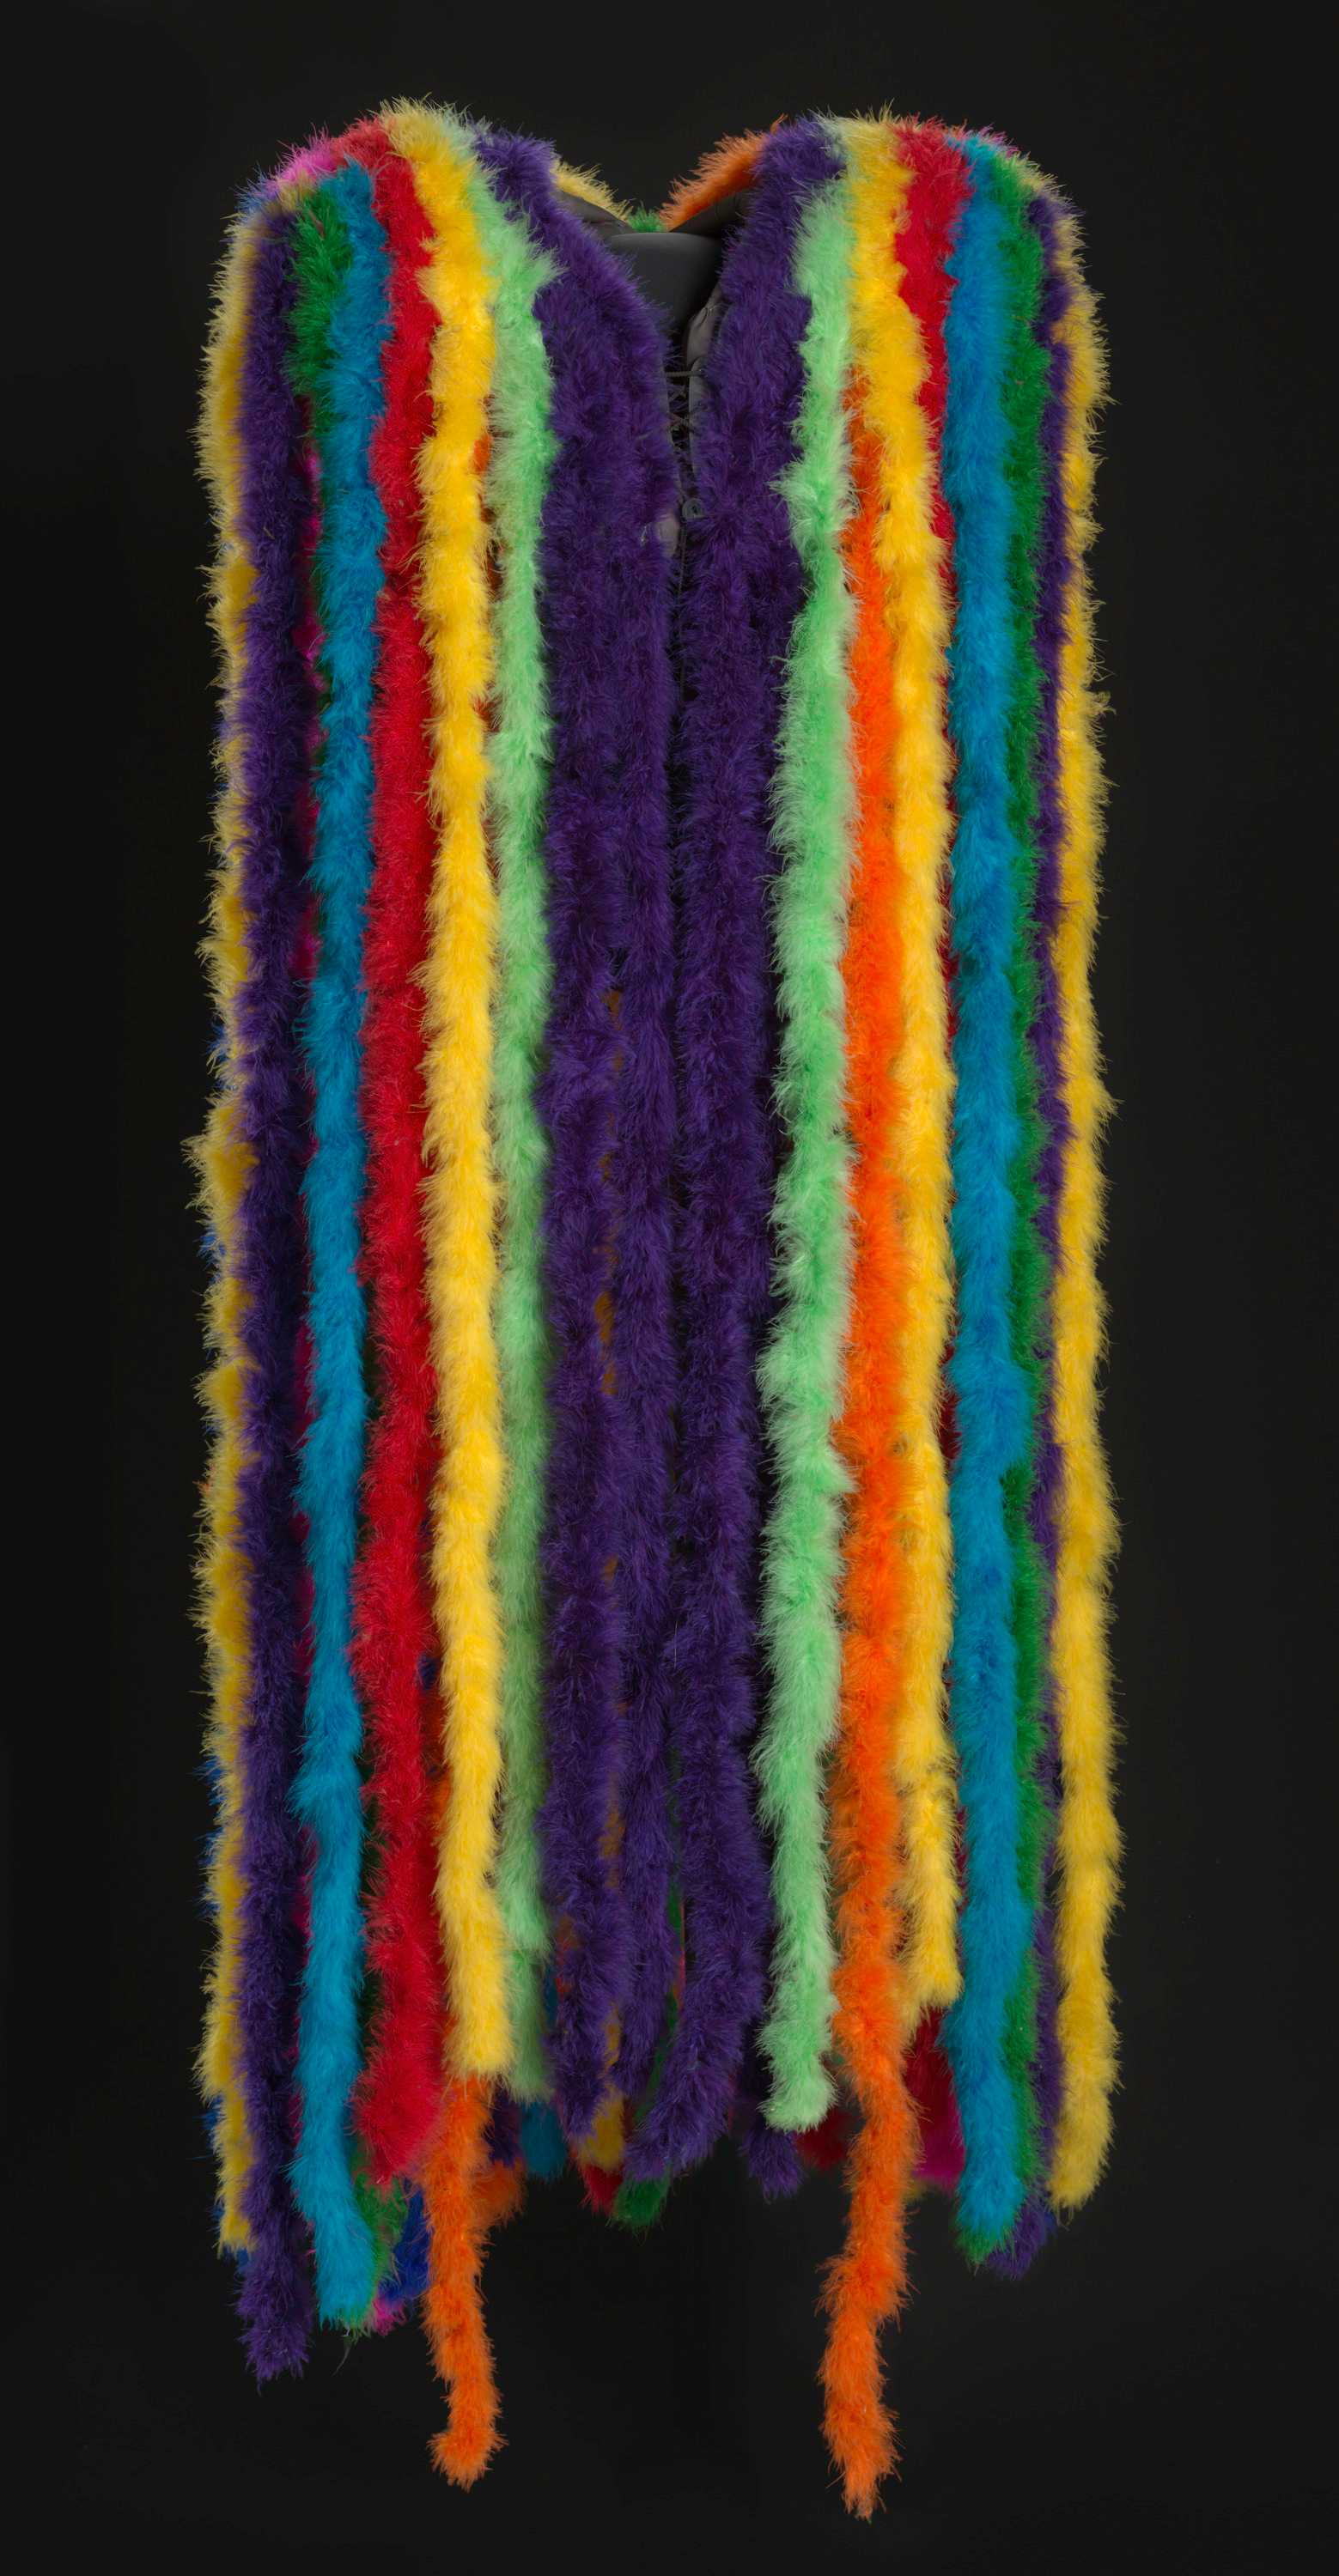 Multi-colored feather boa cape on dark background